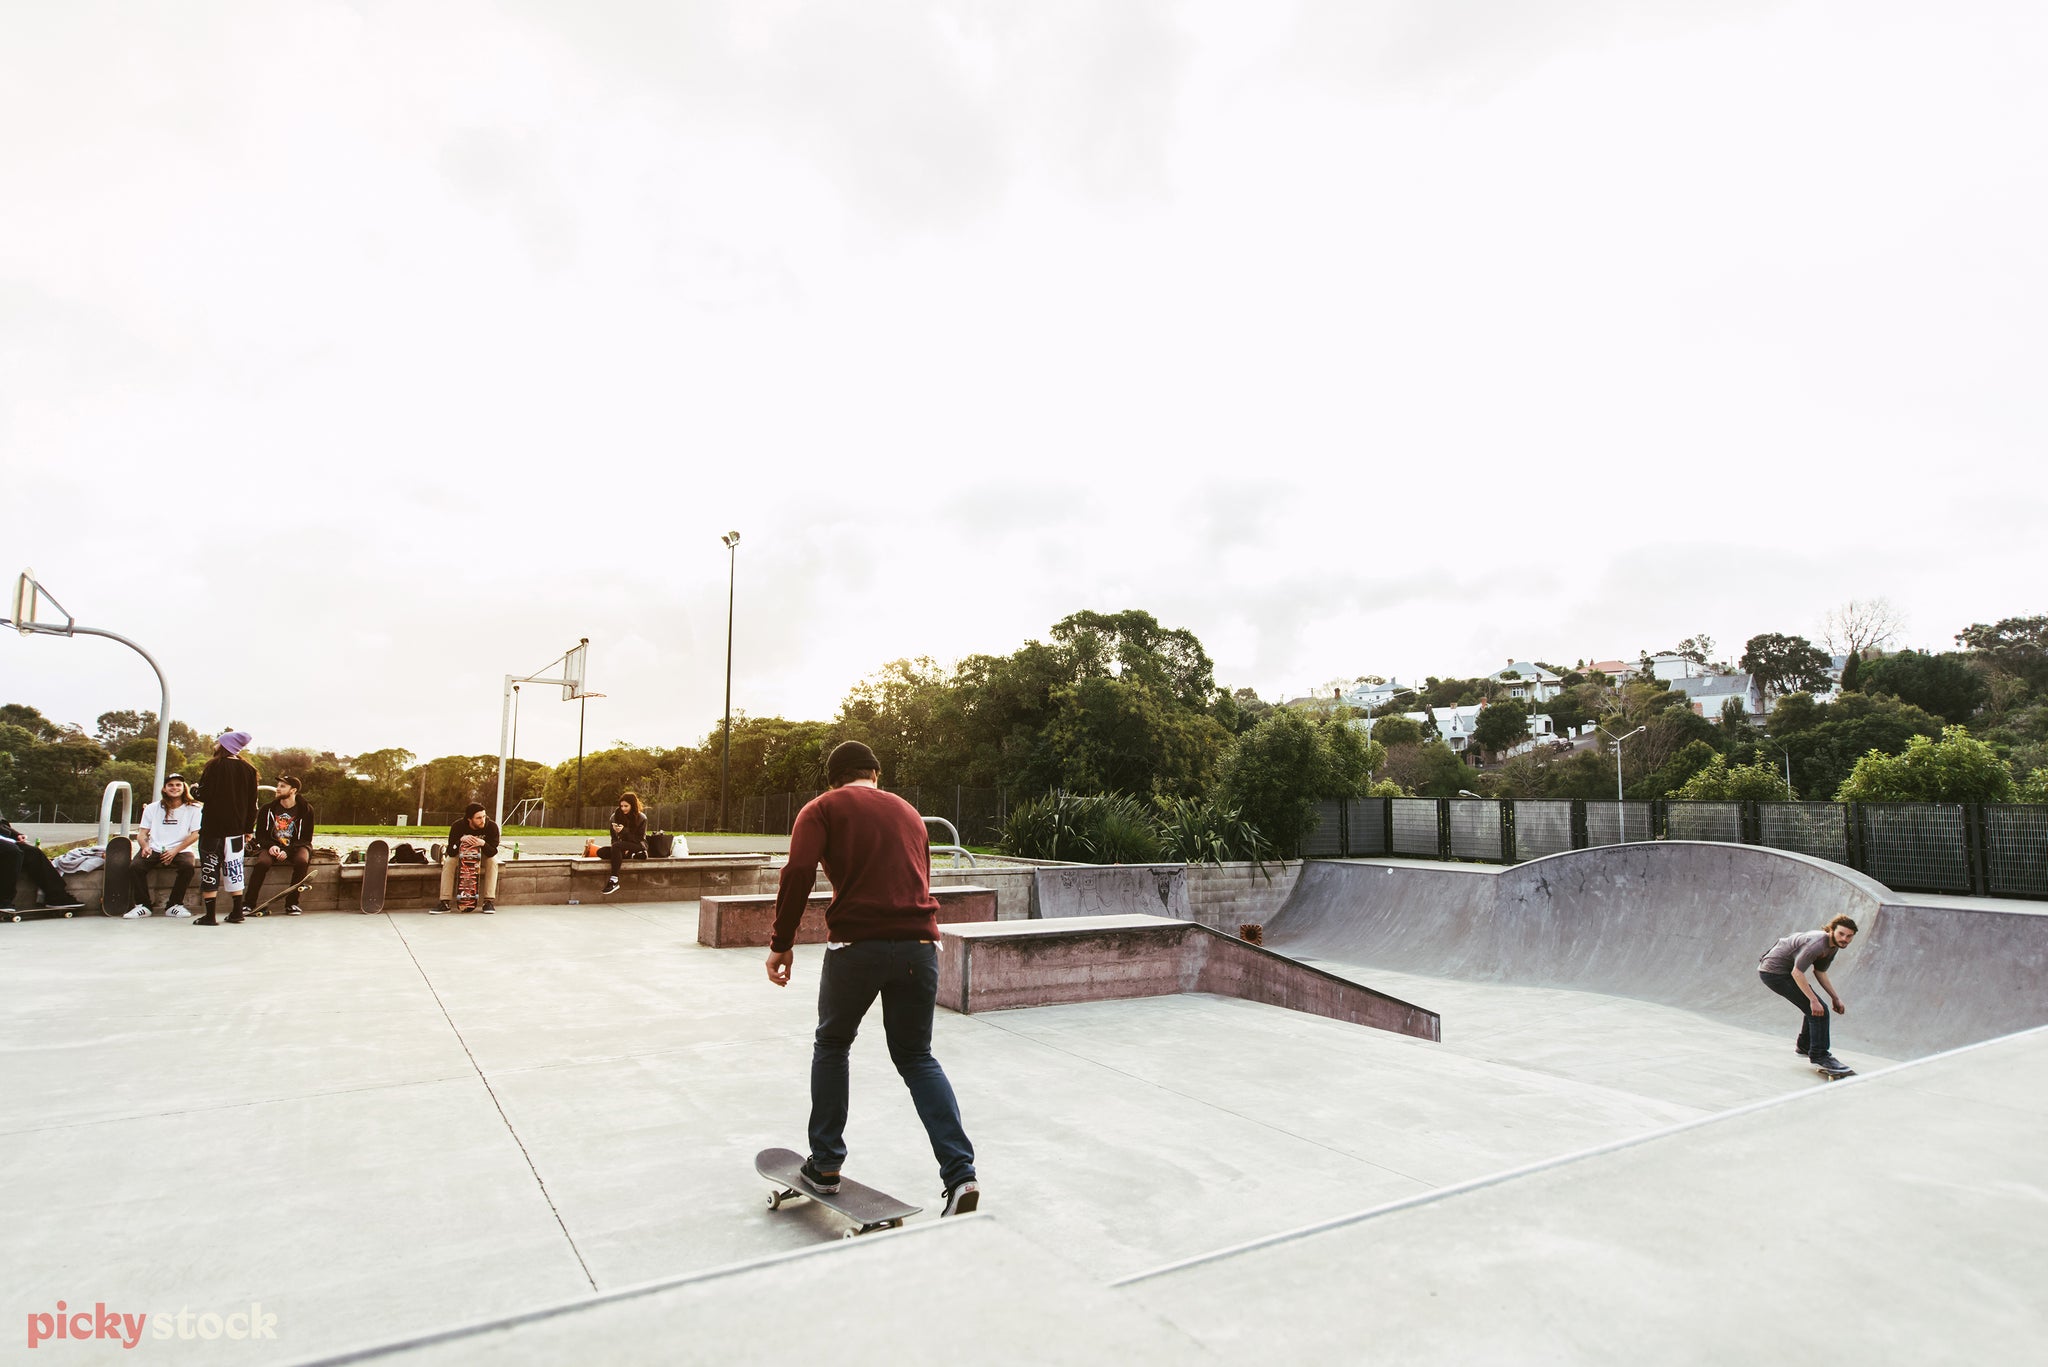 Skate boarder kicks across concrete skate park in Grey Lynn, in front of basketball court.